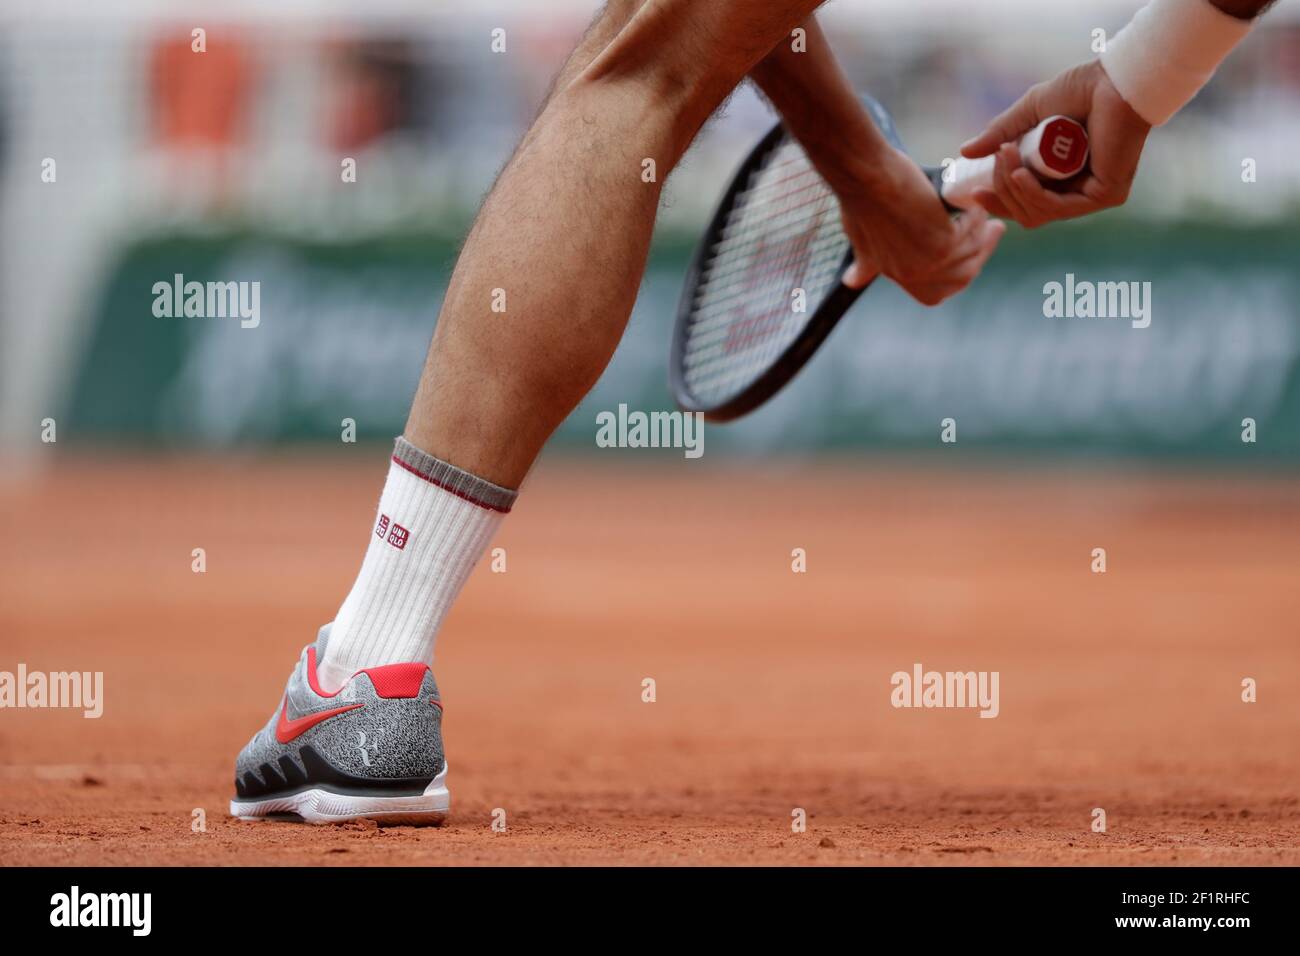 Ilustración de las zapatillas Nike Air vapor 2019 de Roger FEDERER (sui) durante el Roland-Garros 2019, Grand Slam Tennis sorteo masculino el 4 de junio de 2019 en el estadio